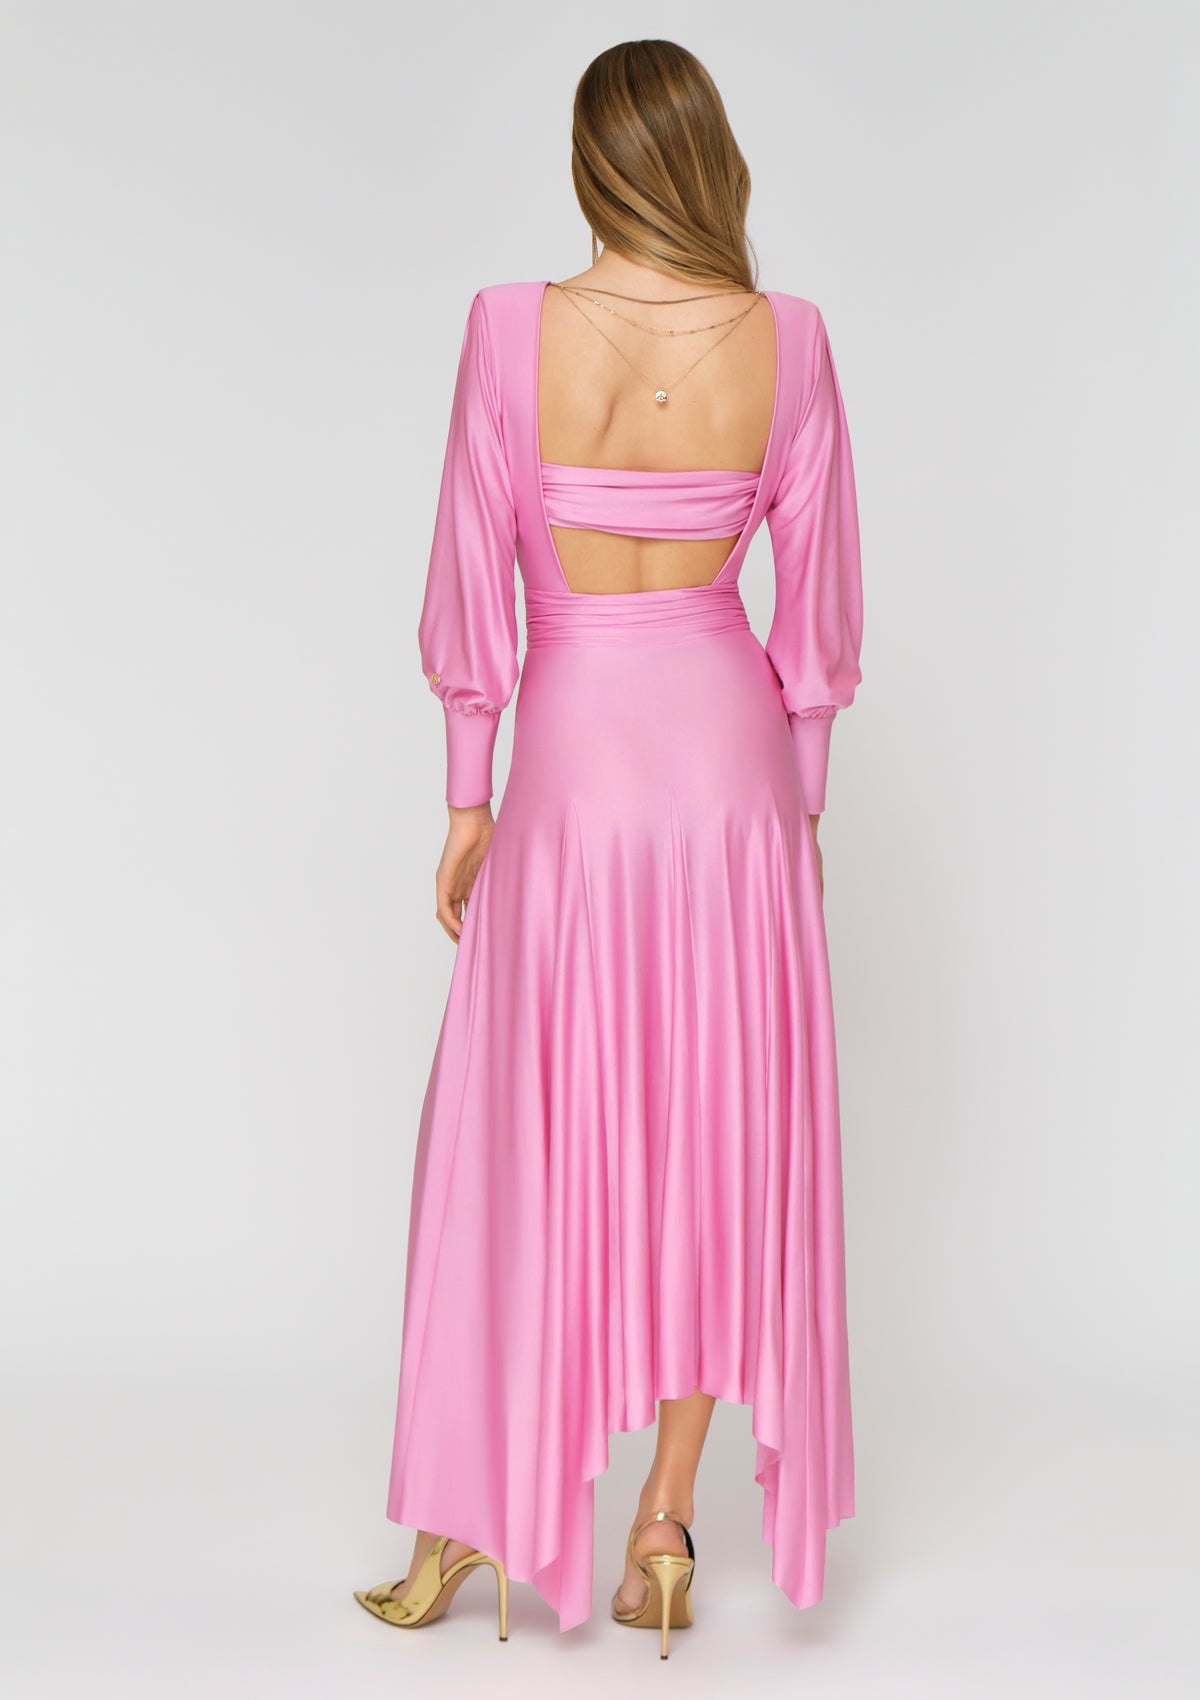 SCINTILLA Kleid pink